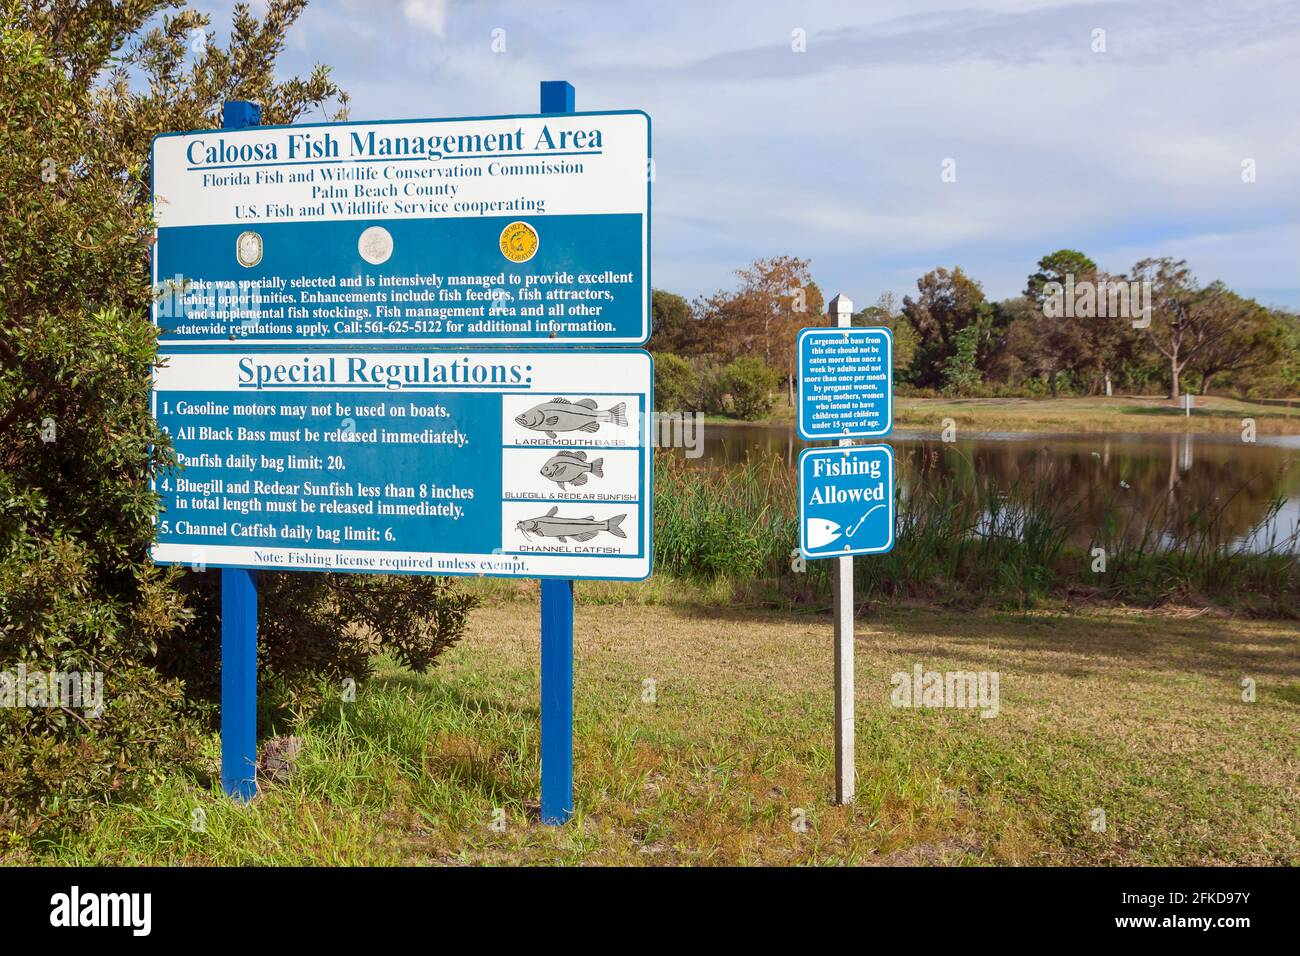 Firme en el Parque Caloosa del Condado de Palm Beach, Florida, mostrando las reglas y regulaciones para el manejo de peces. Foto de stock